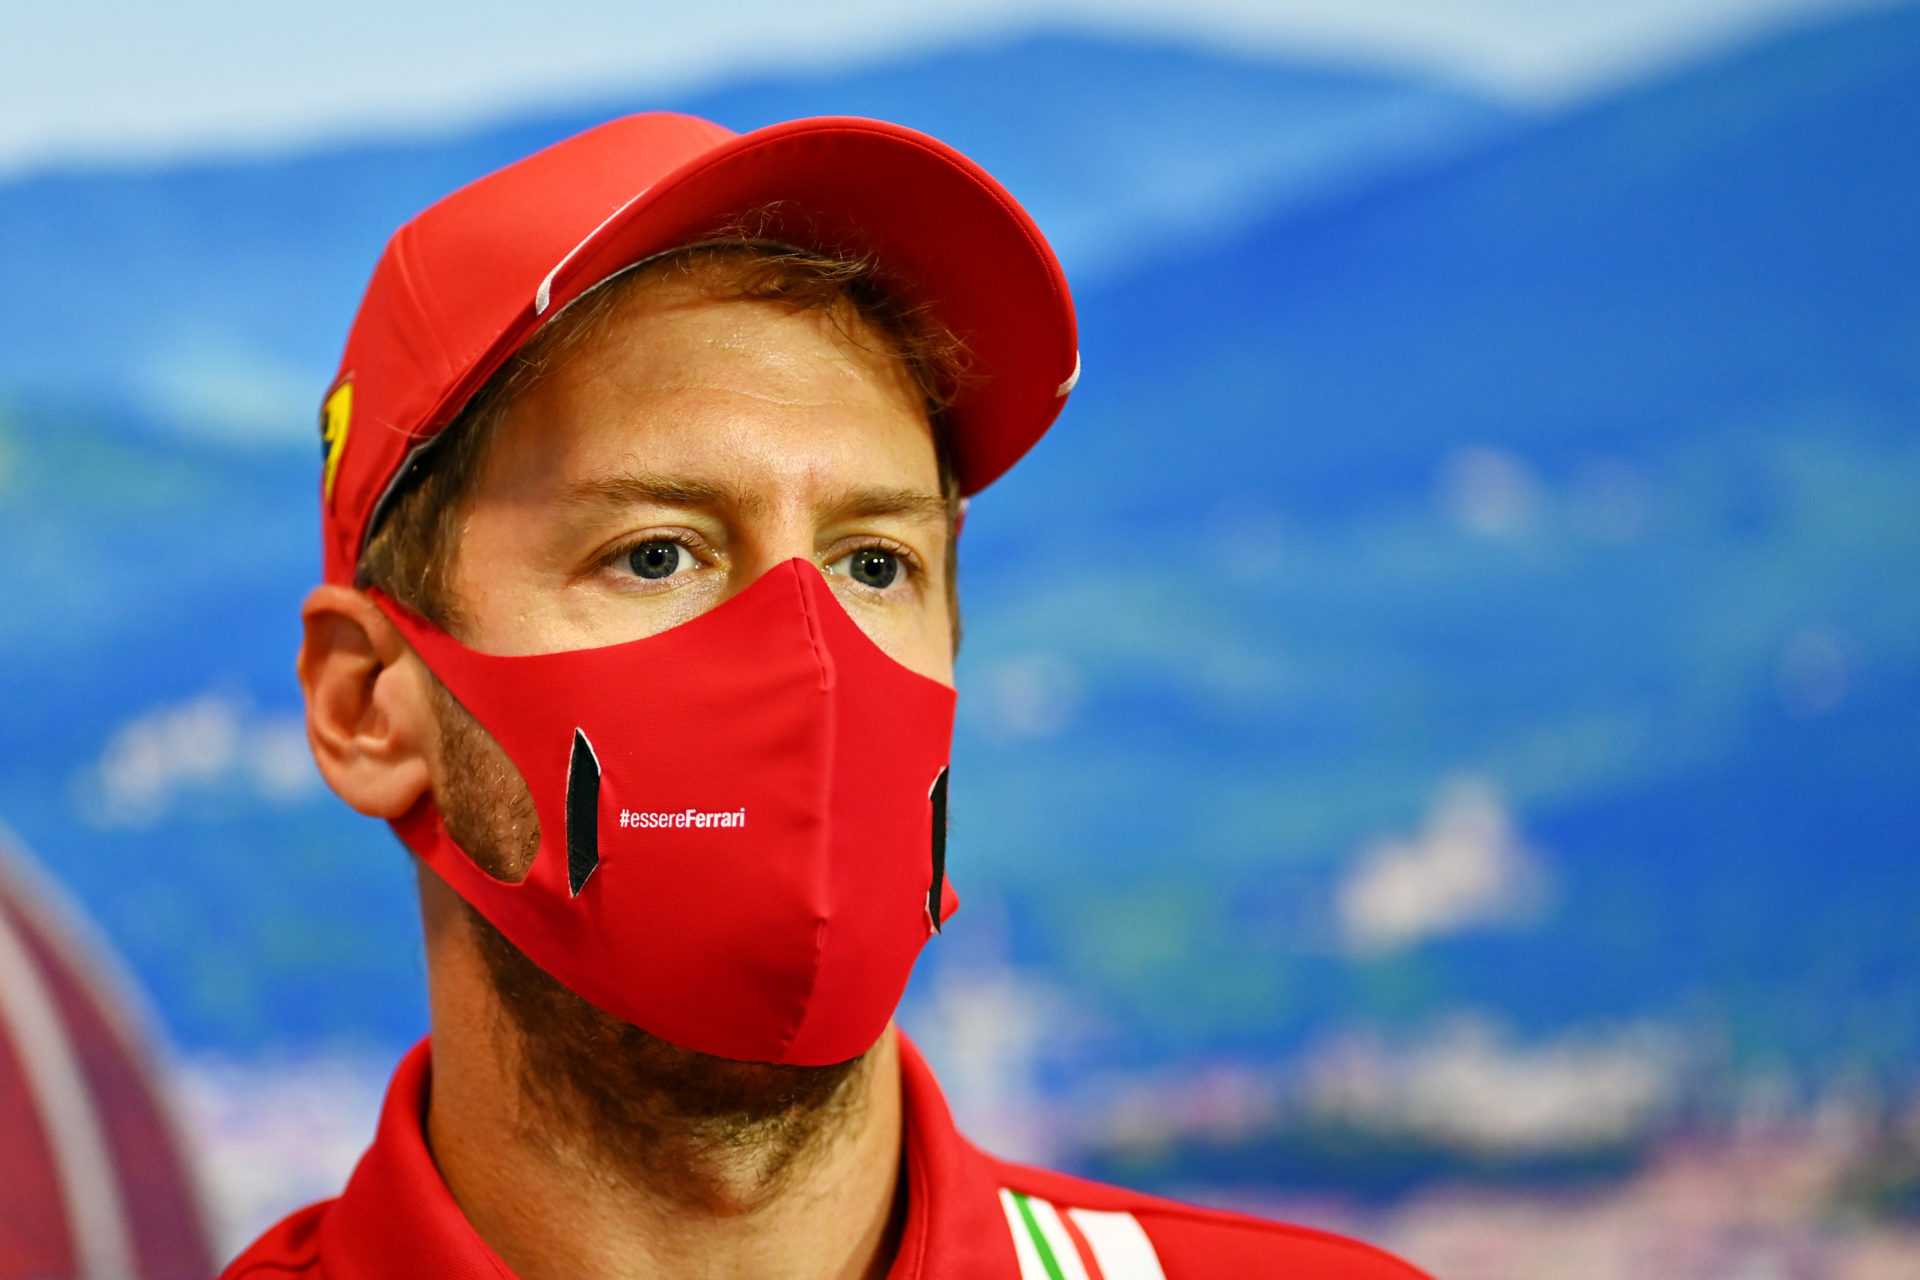 Sebastian Vettel exhorte la F1 à se concentrer sur les vrais problèmes et rejette un changement de règle controversé